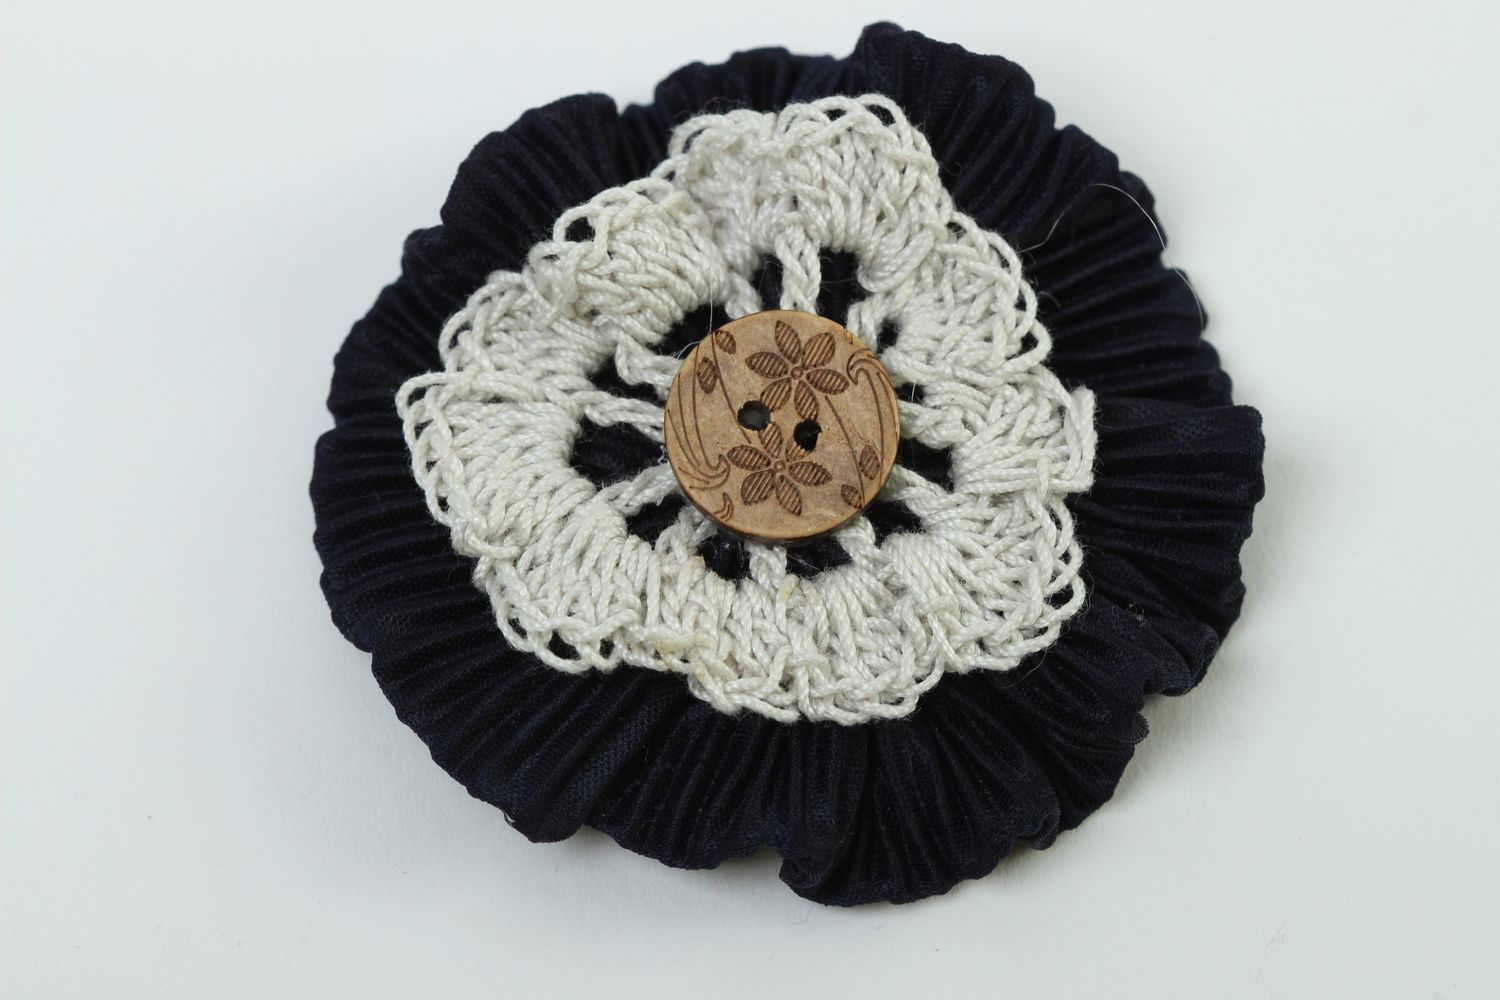 Handmade jewelry supplies crocheted flower crochet flower hair clips supplies photo 2